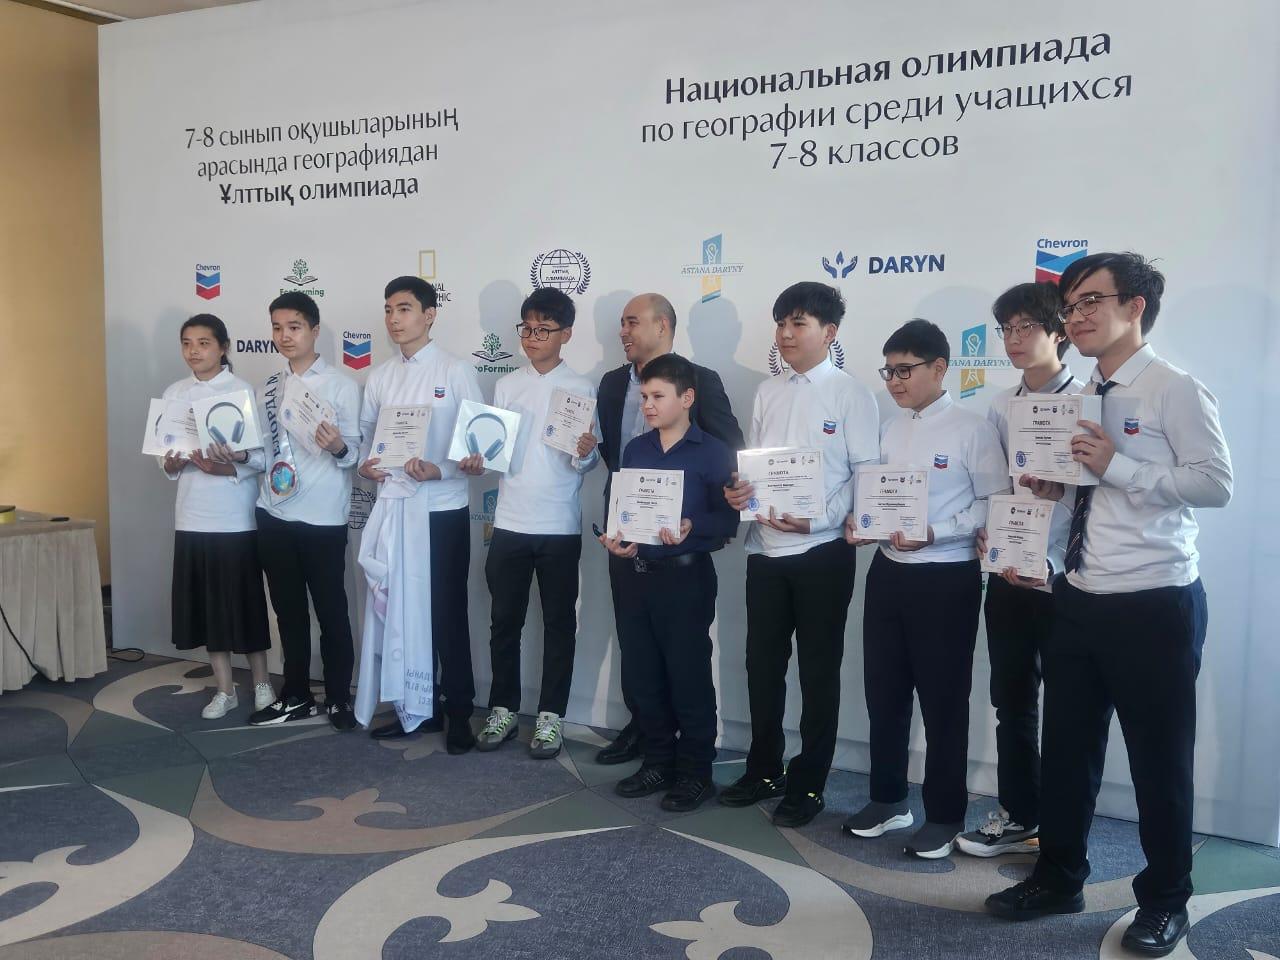 В столице наградили призеров Национальной олимпиады по географии